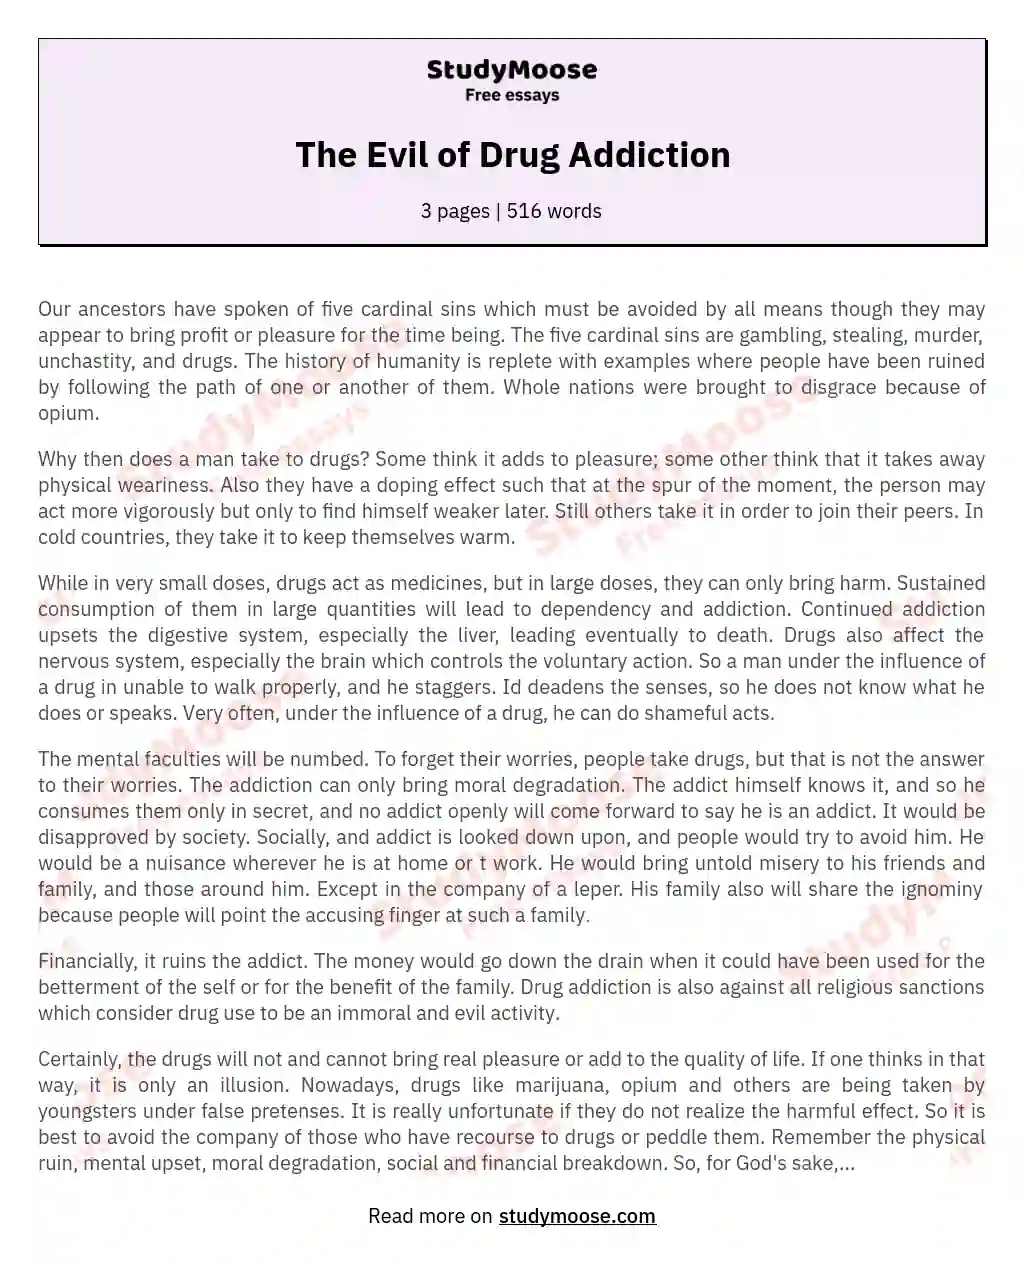 evil of drug addiction essay 150 words